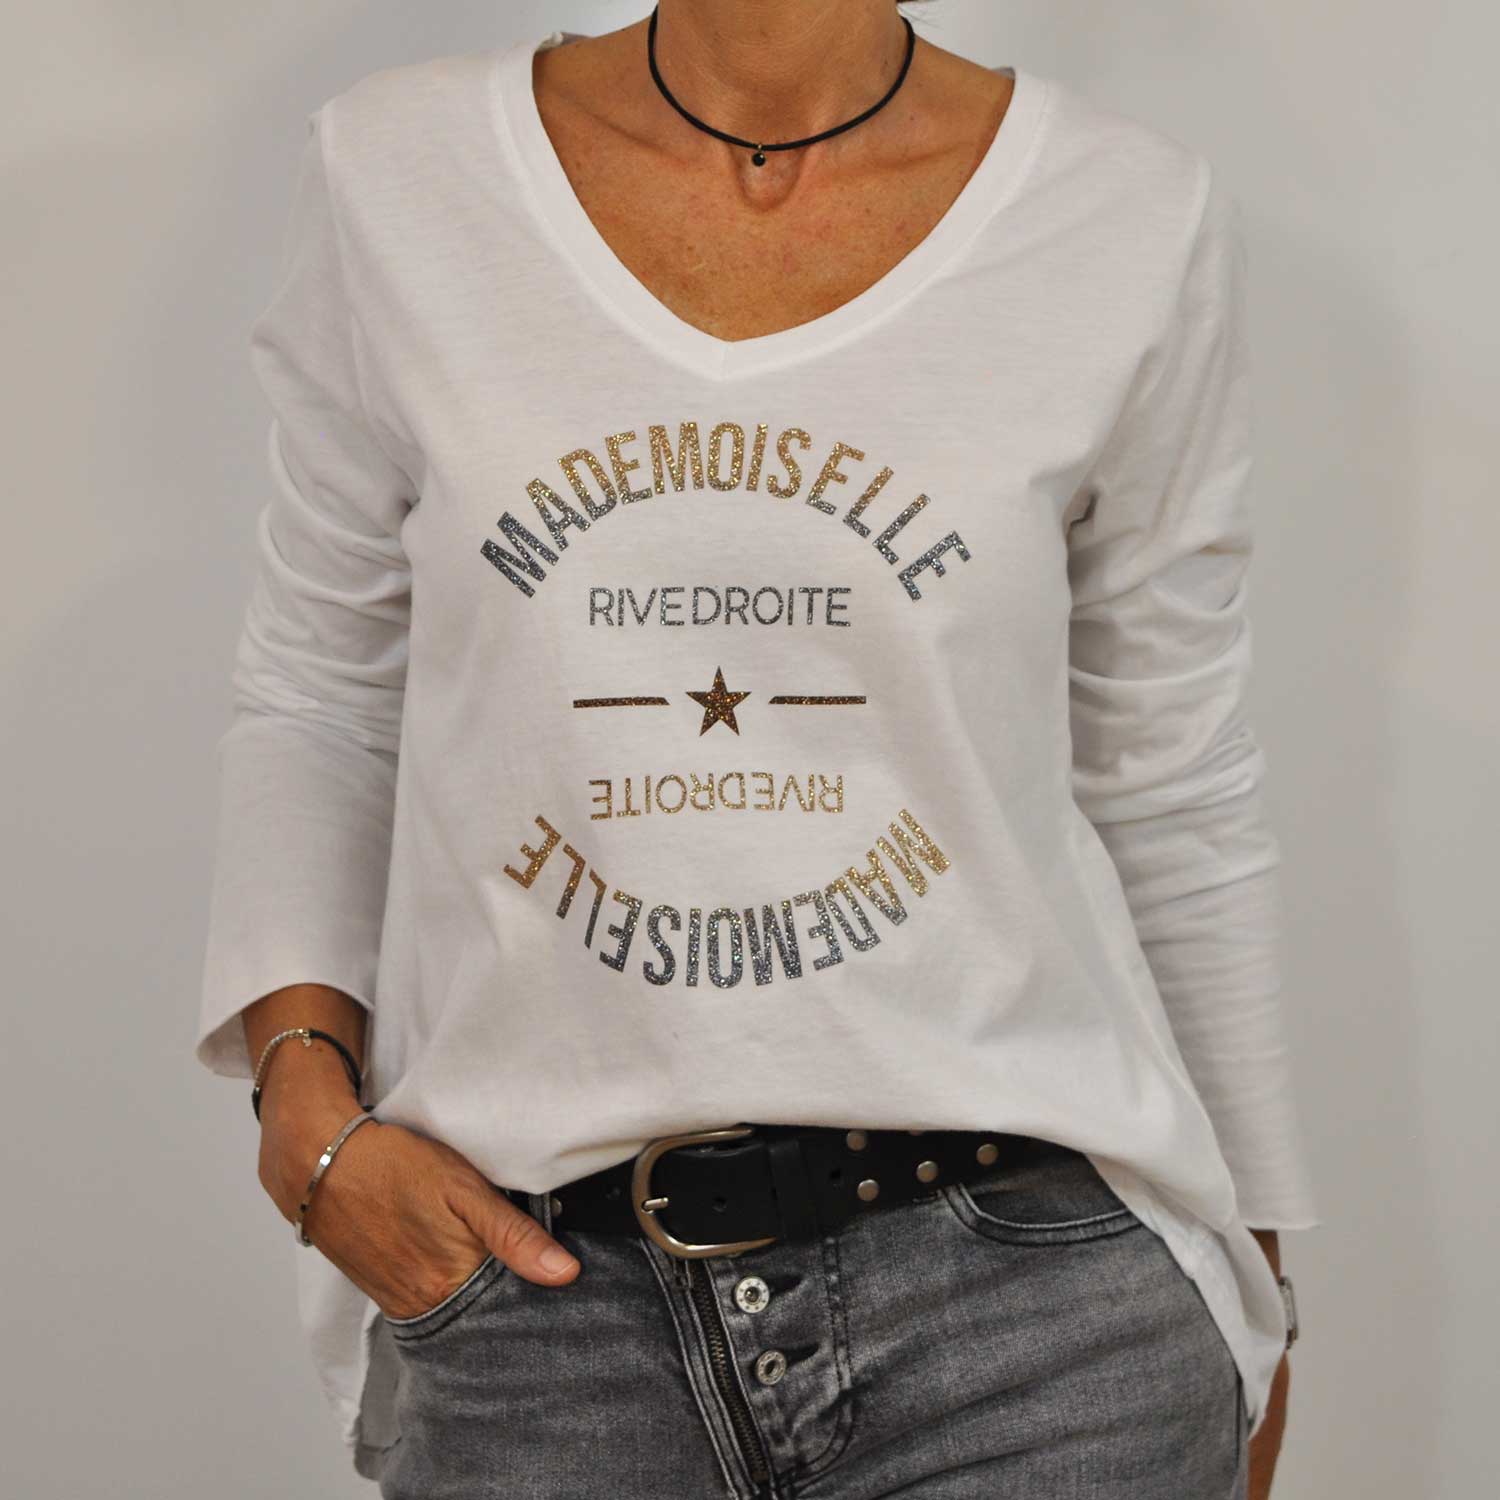 Camiseta Mademoiselle